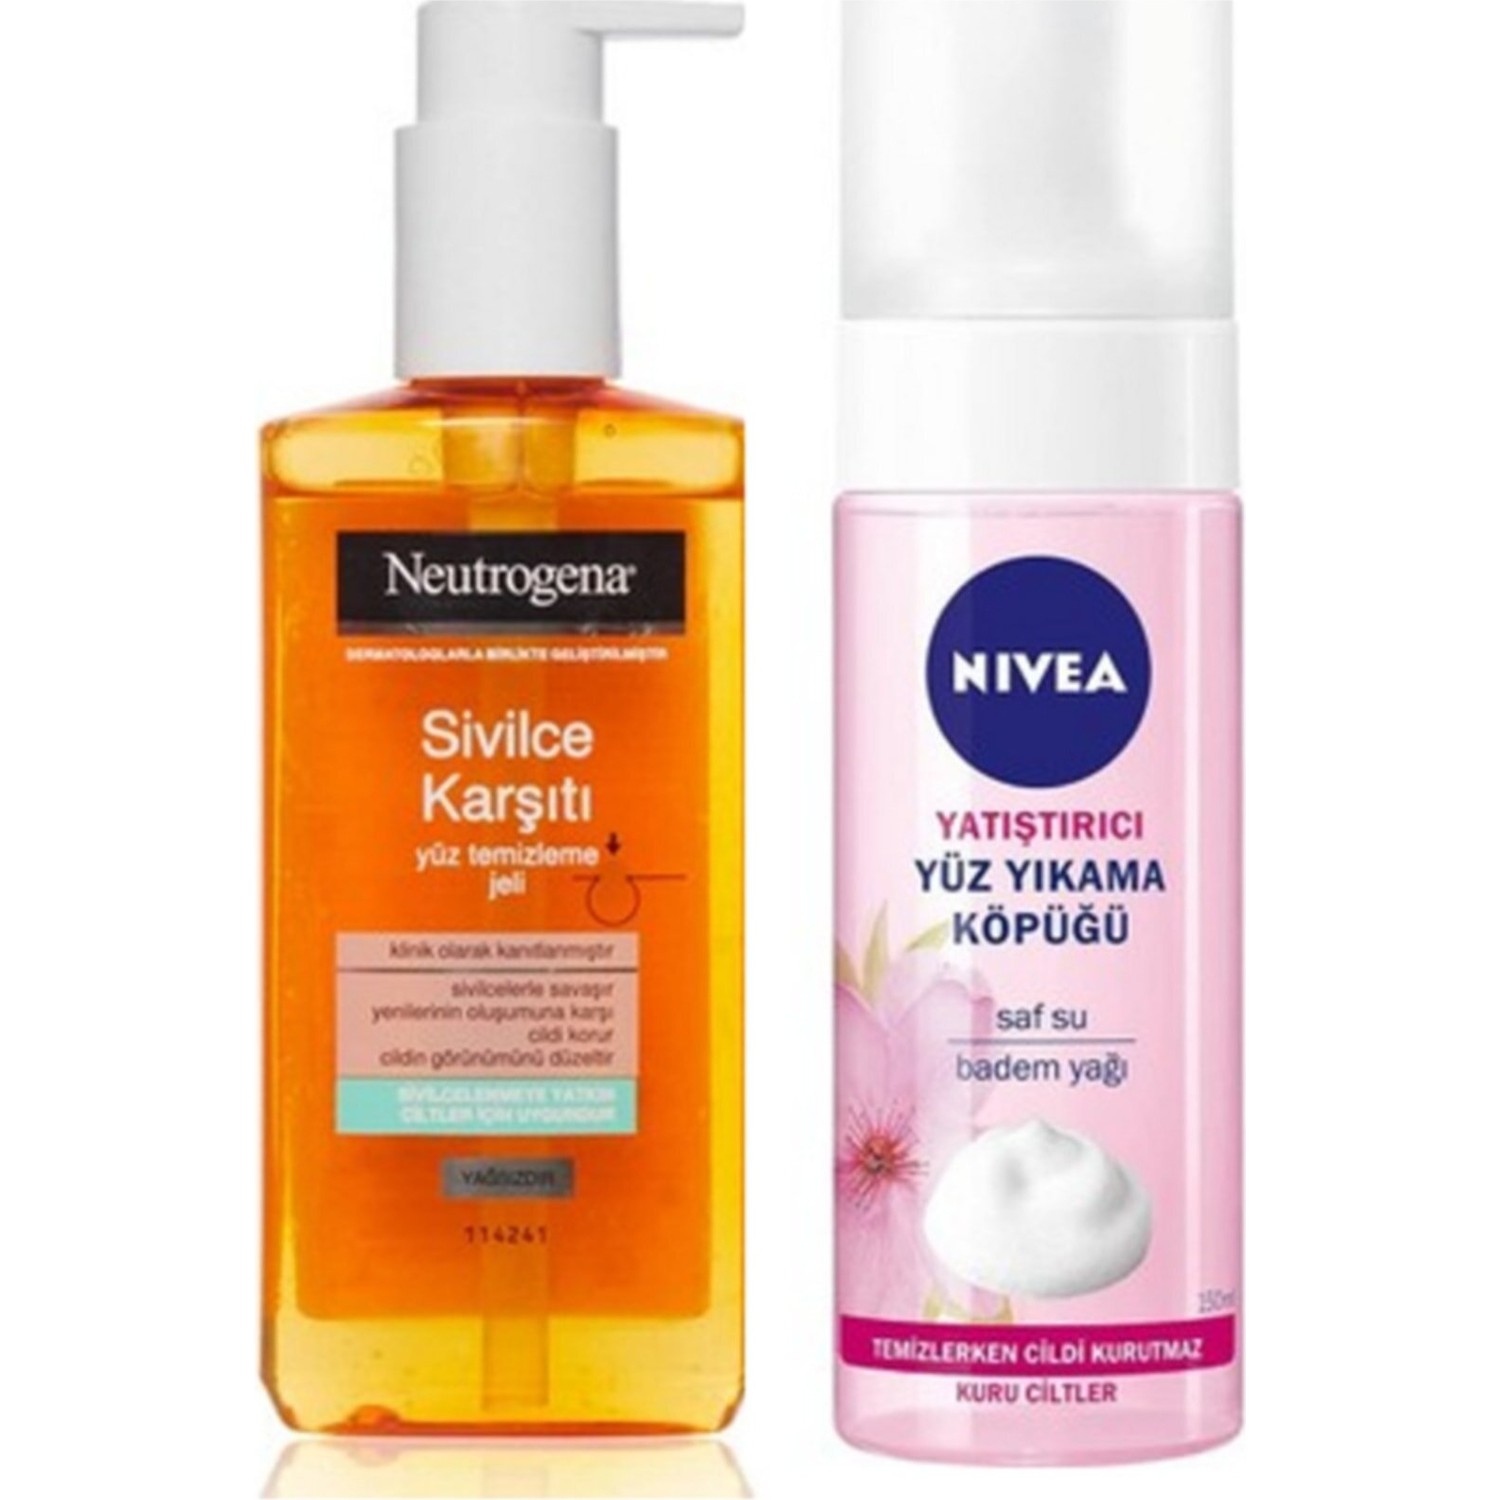 Очищающий гель для лица Neutrogena + Успокаивающее средство для умывания Nivea Minmond neutrogena facial cleansers fresh and clear facial wash pink grapefruit 200ml